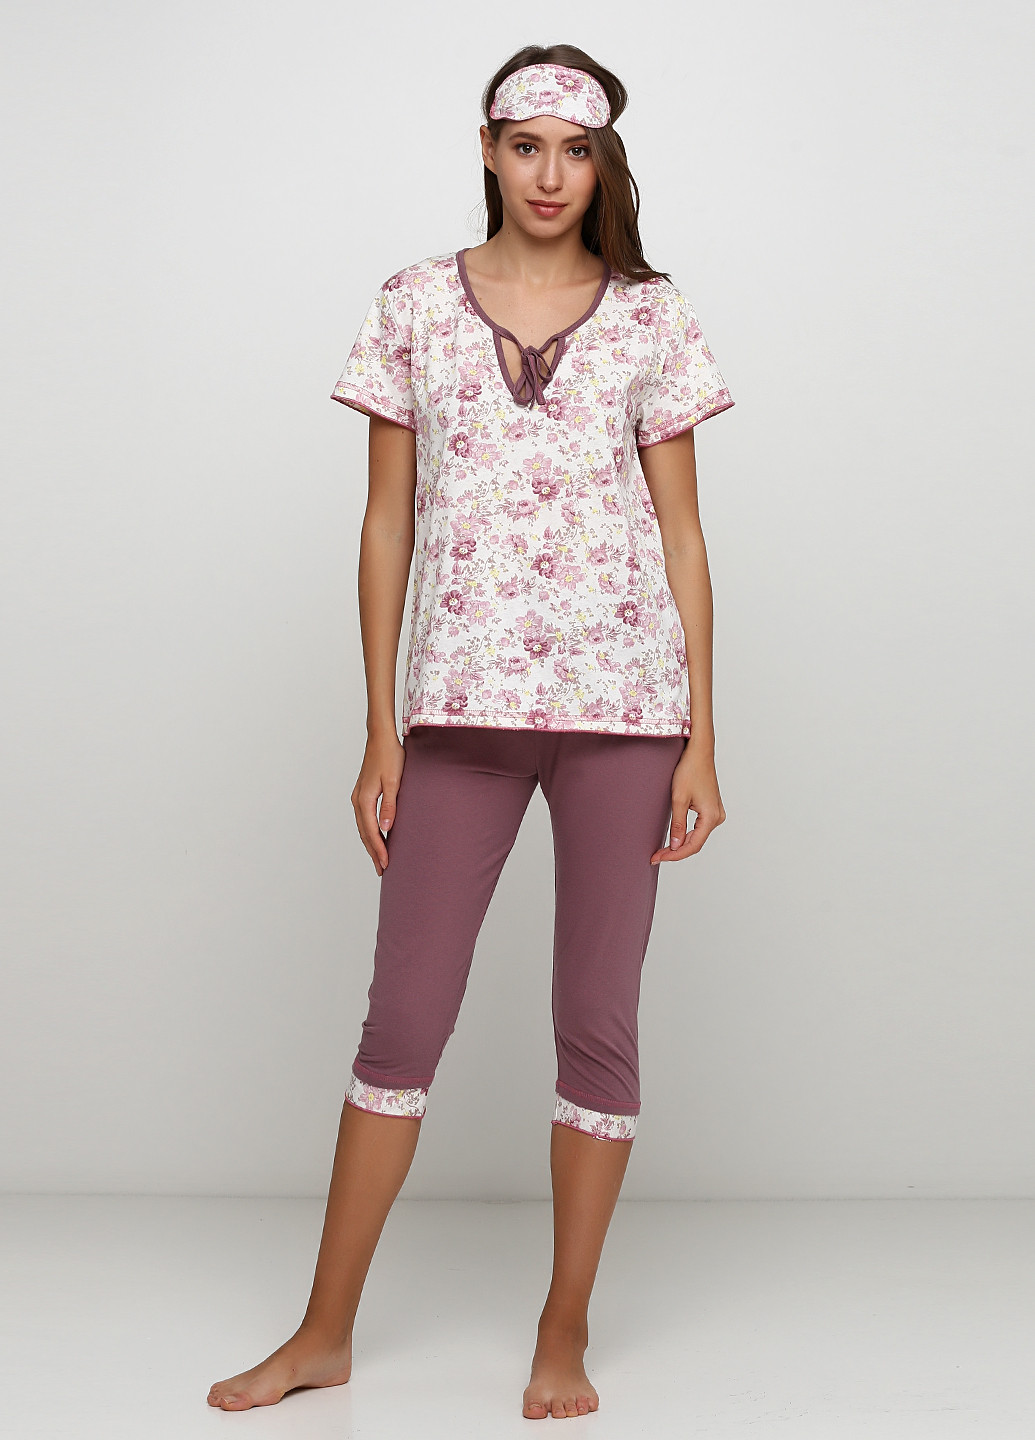 Розово-лиловый демисезонный комплект (футболка, бриджи, маска для сна) Трикомир